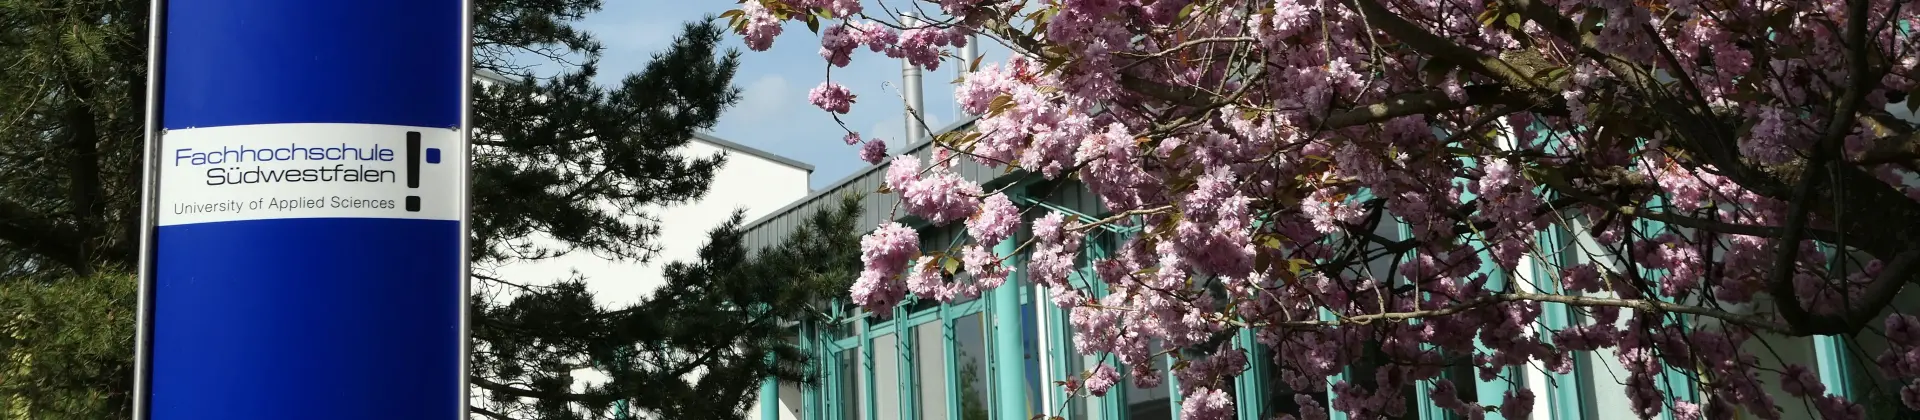 Campus Meschede Lindenstraße. FH Schild und blühende Kirschbäume